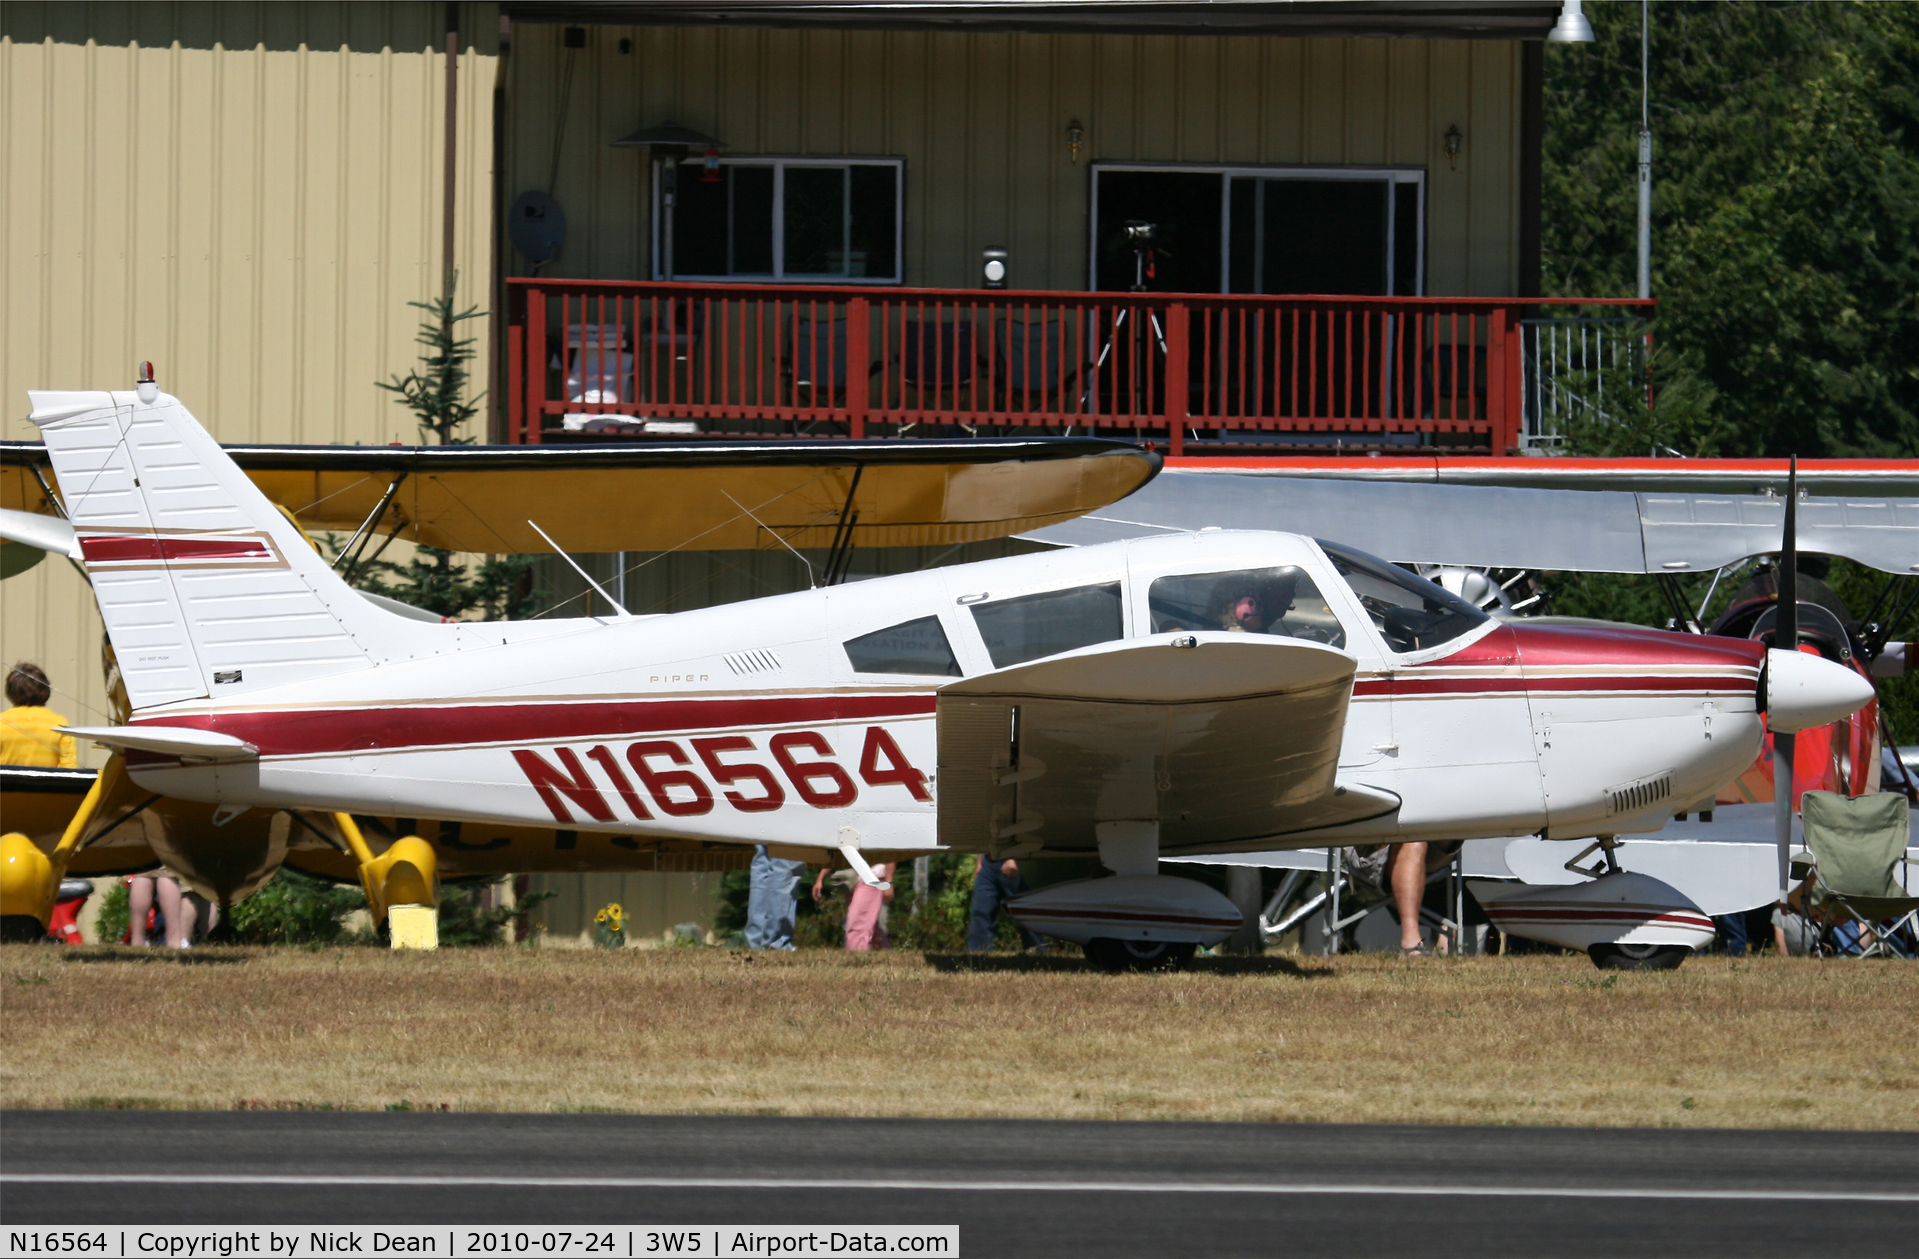 N16564, 1973 Piper PA-28-180 C/N 28-7305285, 3W5